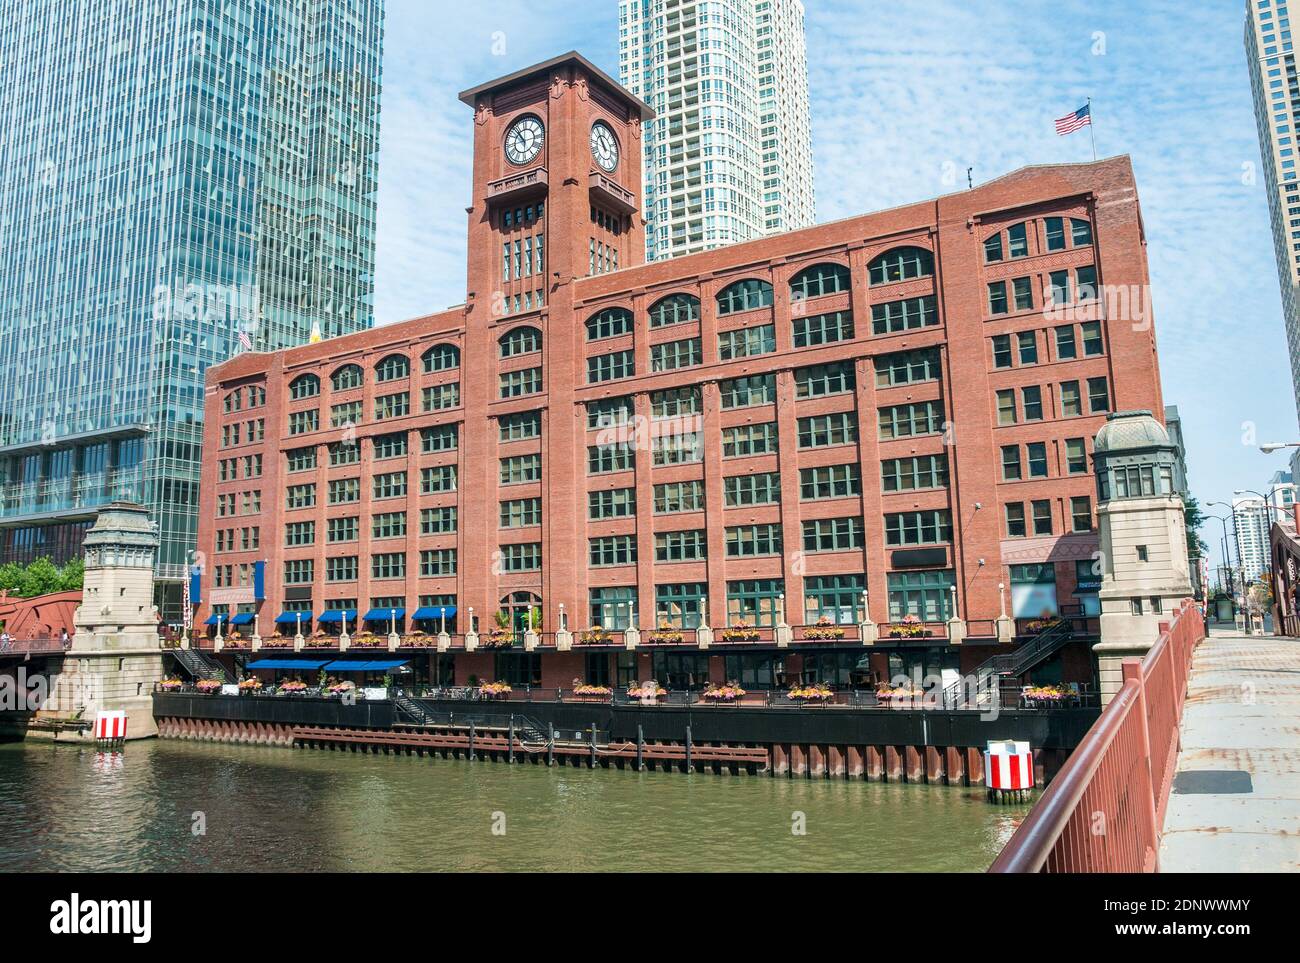 Vista del edificio Reid Murdoch con reloj desde abajo junto al río Chicago, Illinois, EE.UU Foto de stock